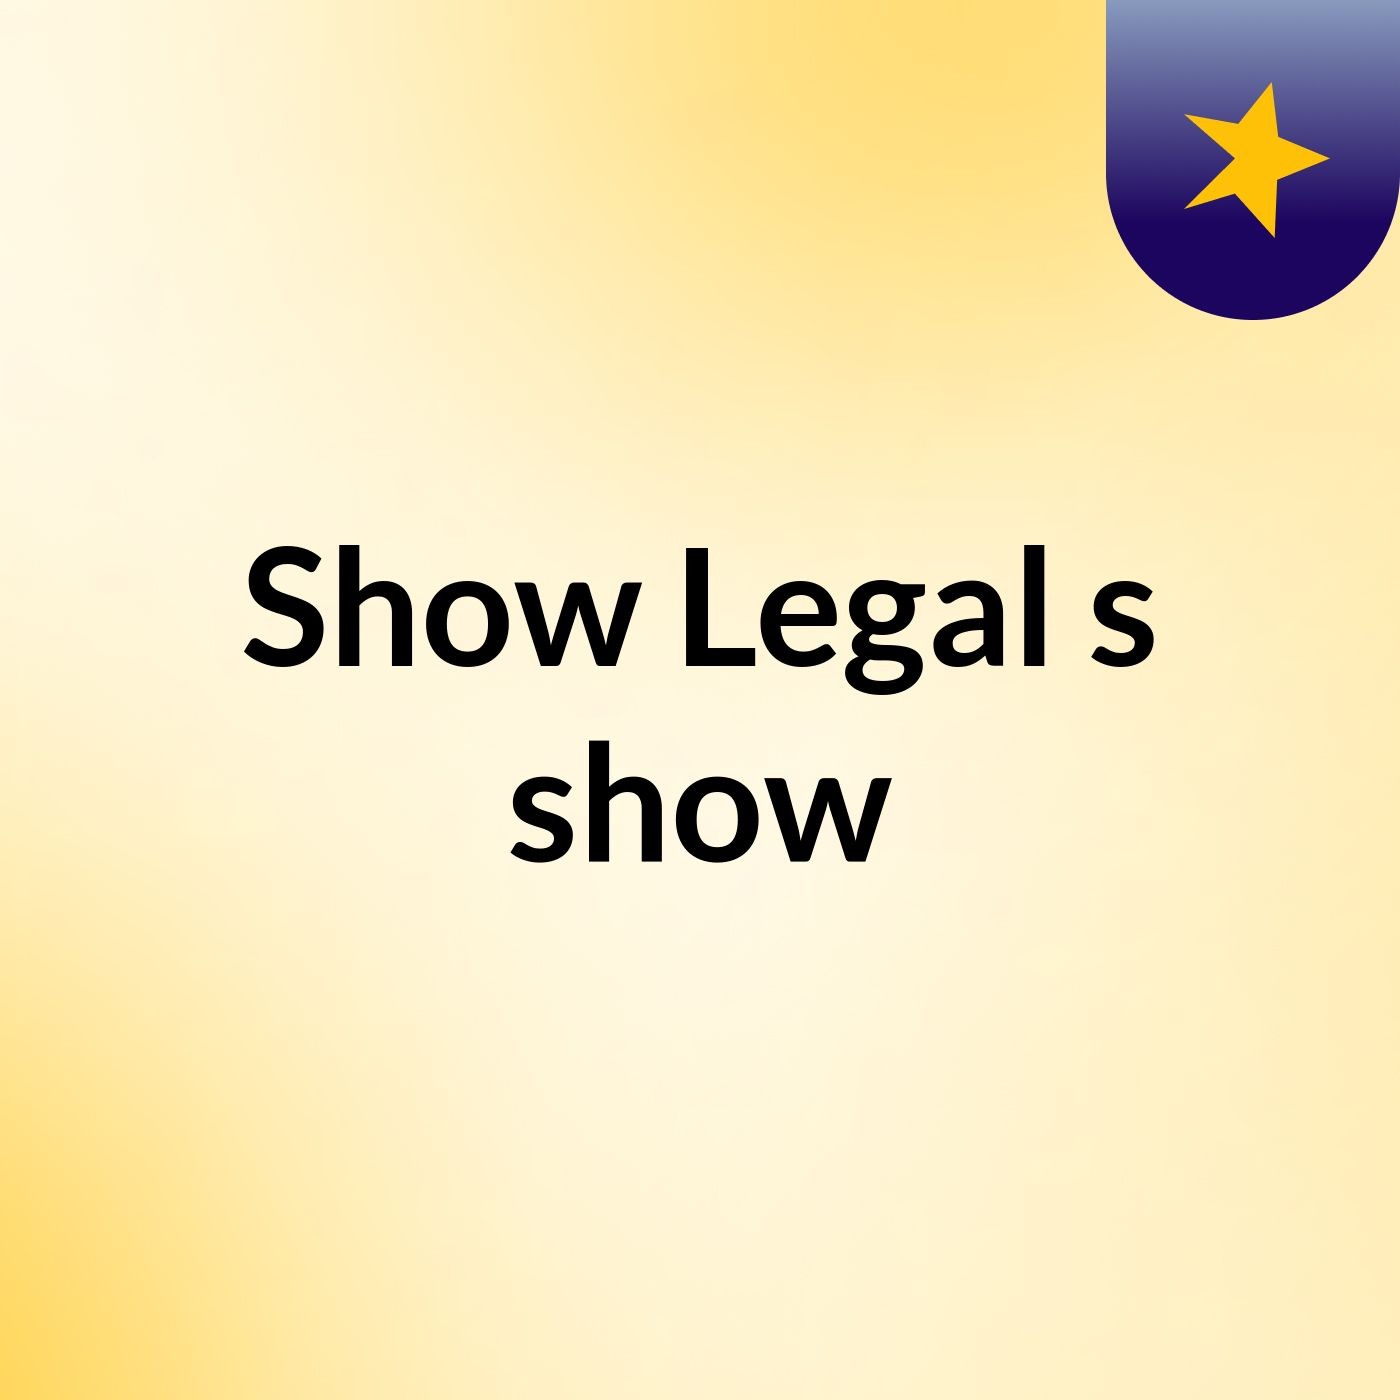 Show Legal's show